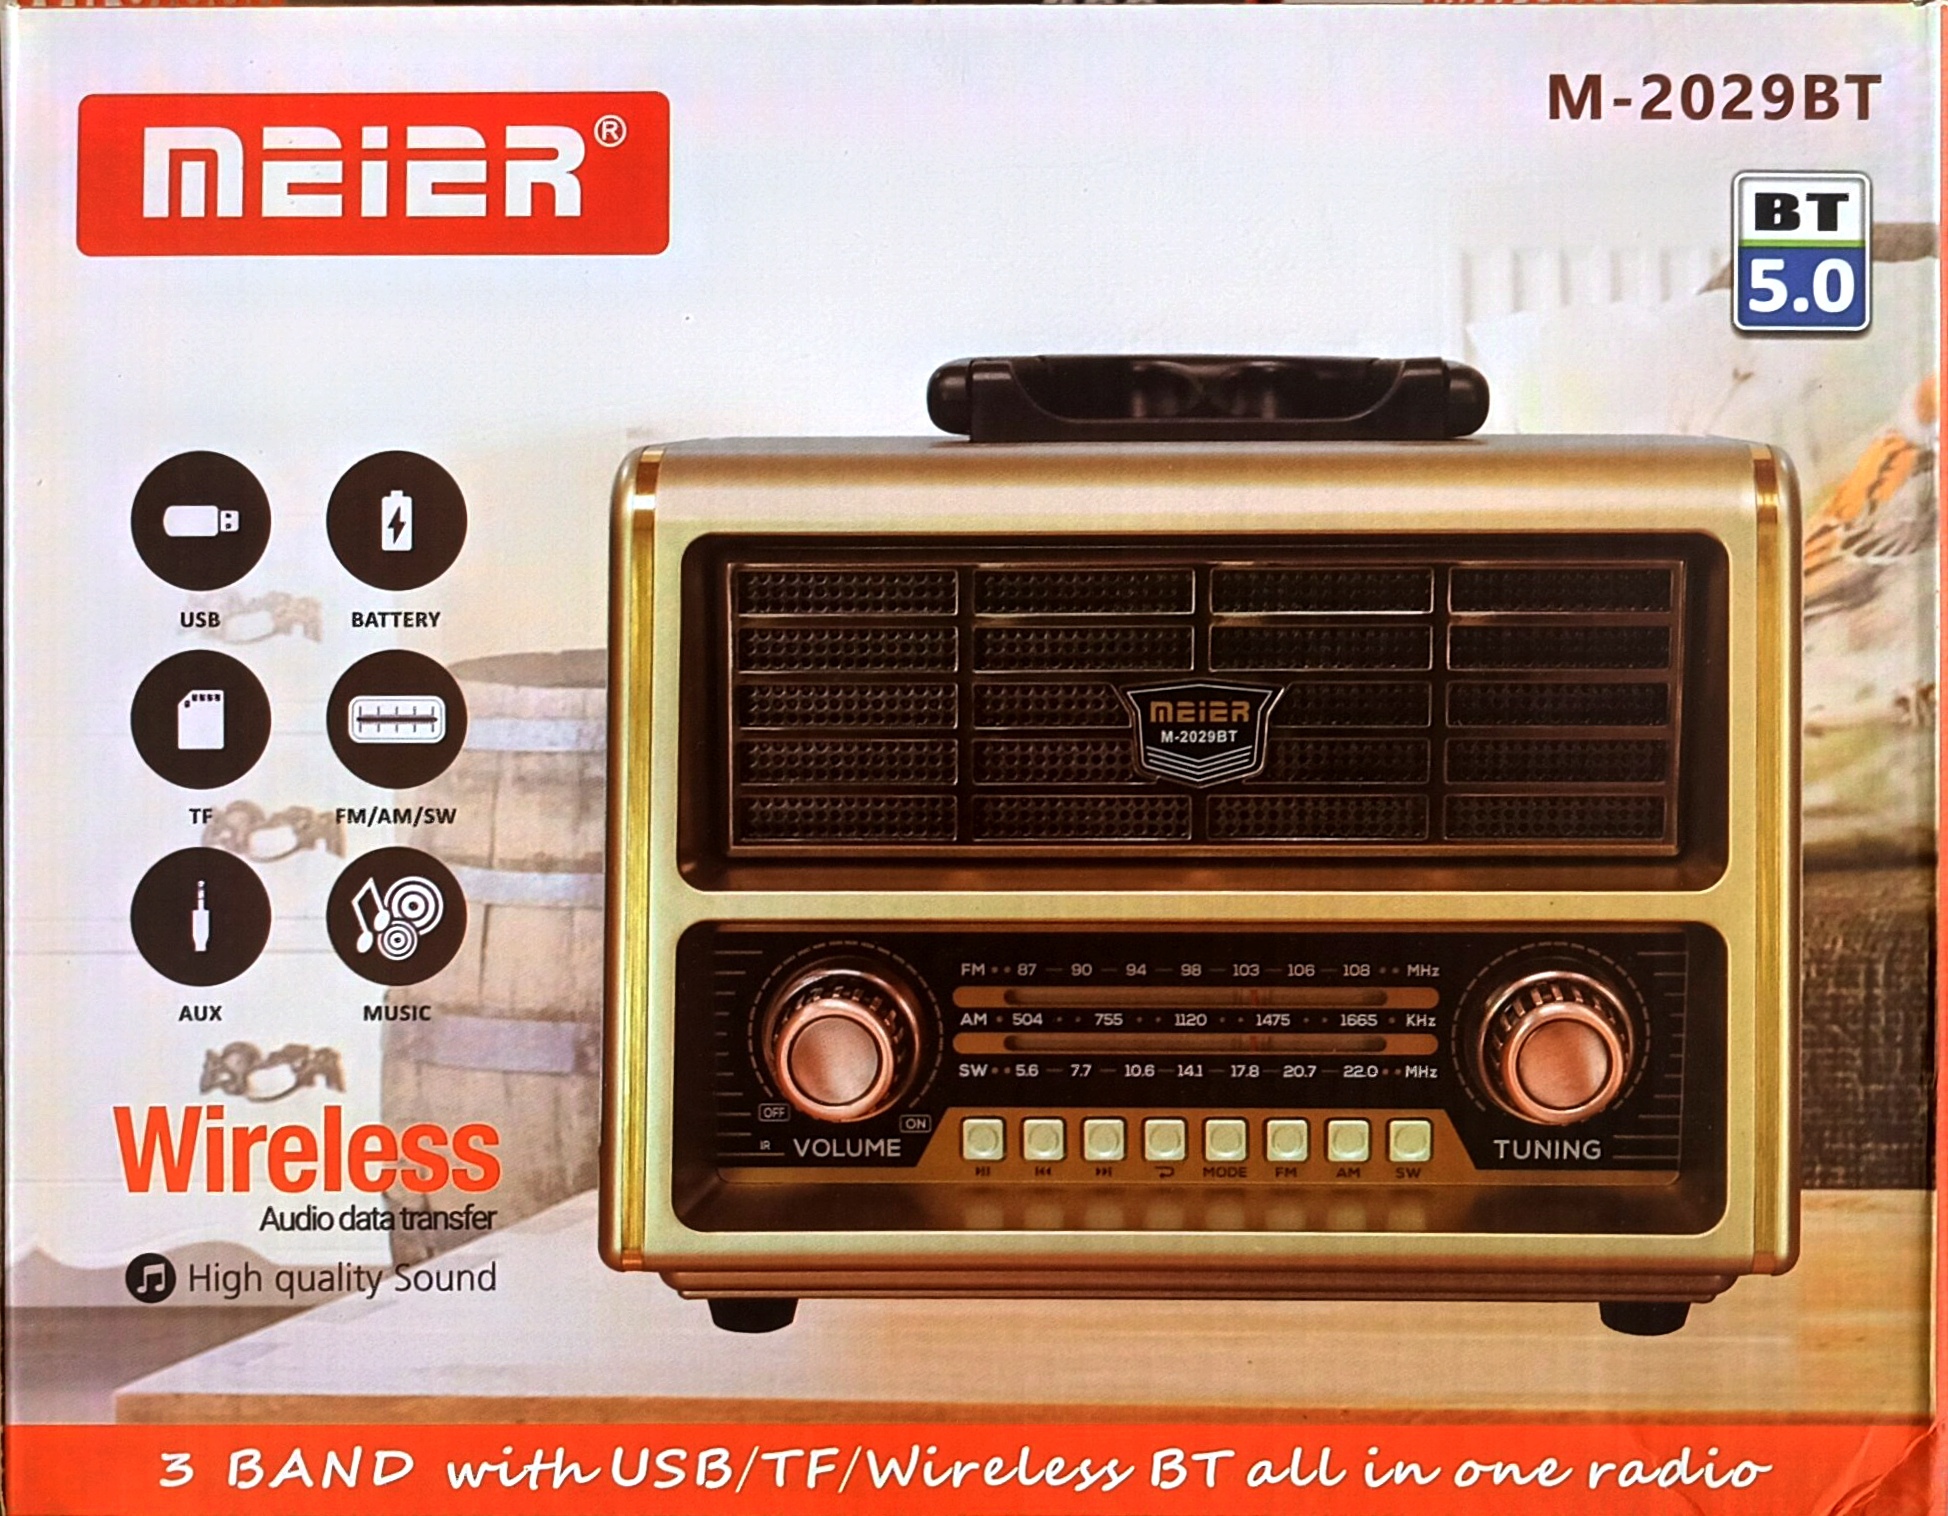 خرید رادیو M-2029BT